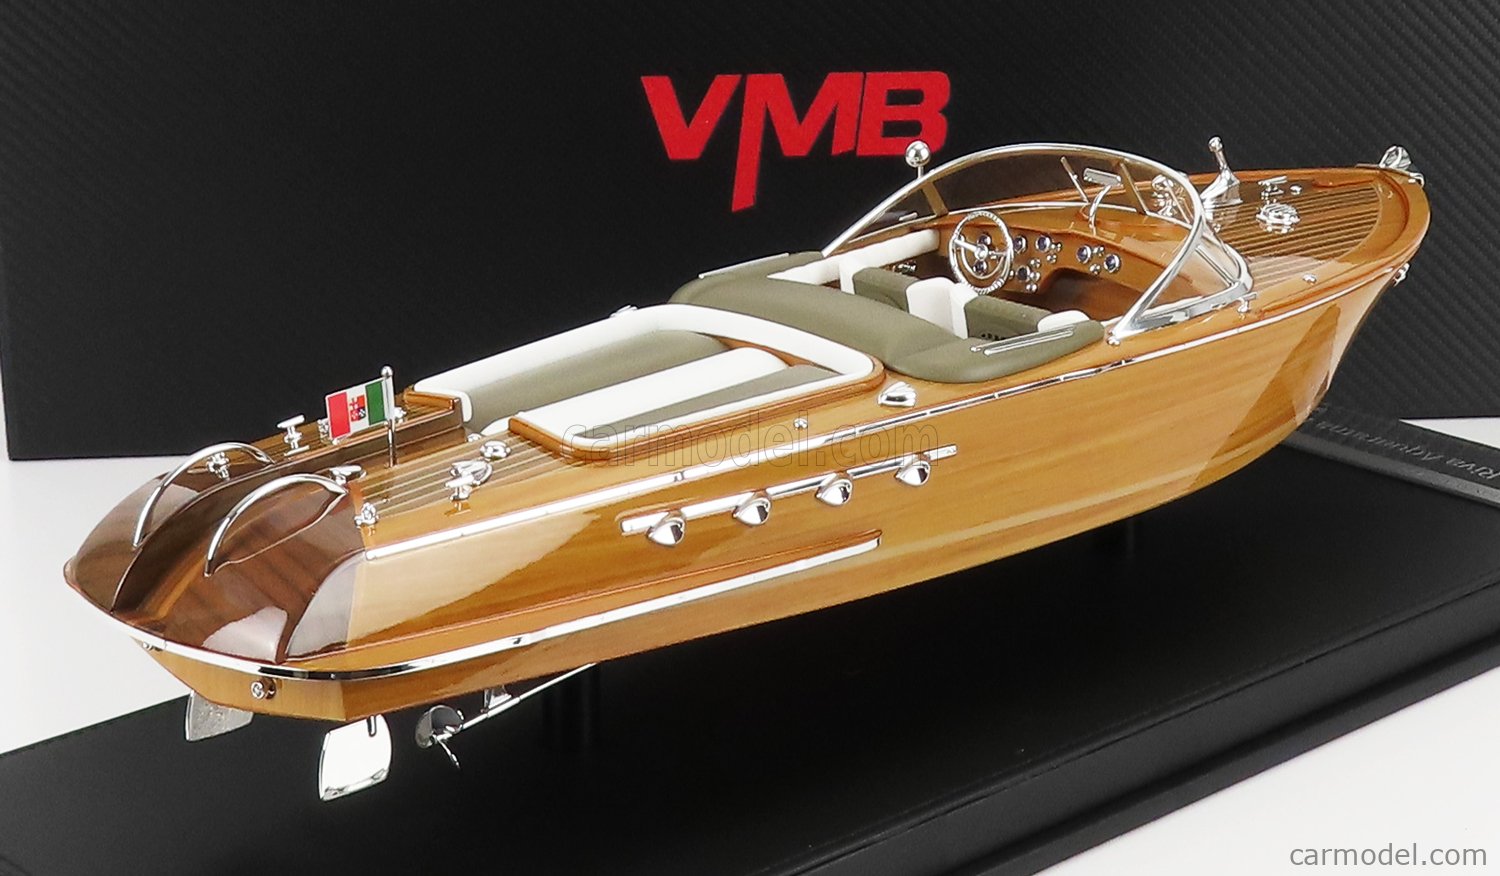 VMB-MODELS VMBR18001 Scale 1/18  RIVA AQUARAMA MOTOSCAFO BOAT 1962 - LAMBORGHINI - CON VETRINA - WITH SHOWCASE - CM. 47.0 X CM. 13.5 WOOD